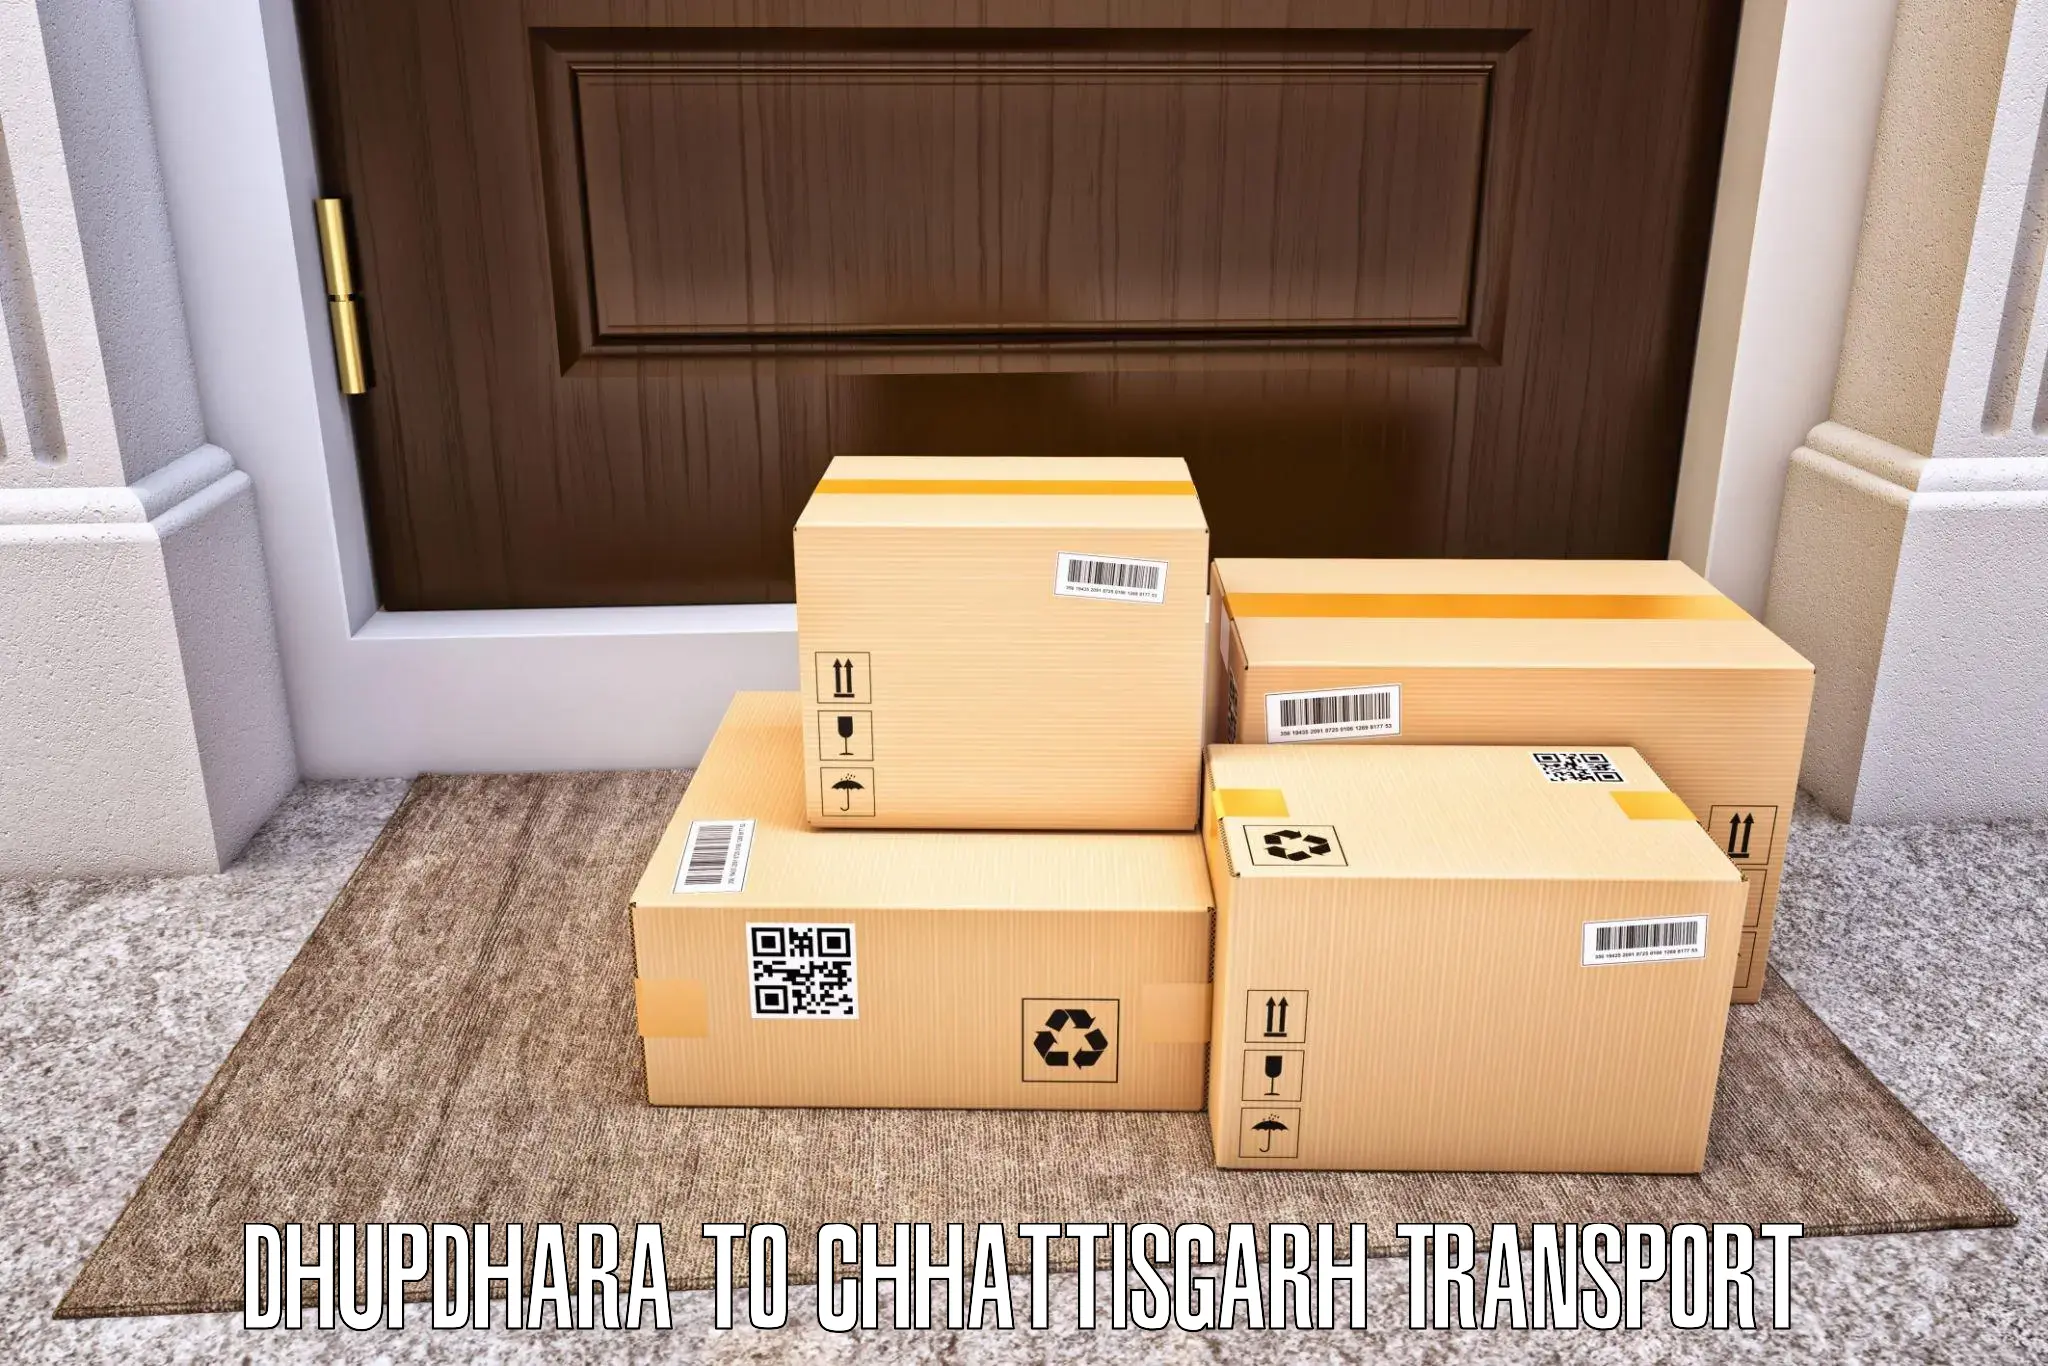 Cargo transportation services Dhupdhara to Dongargarh